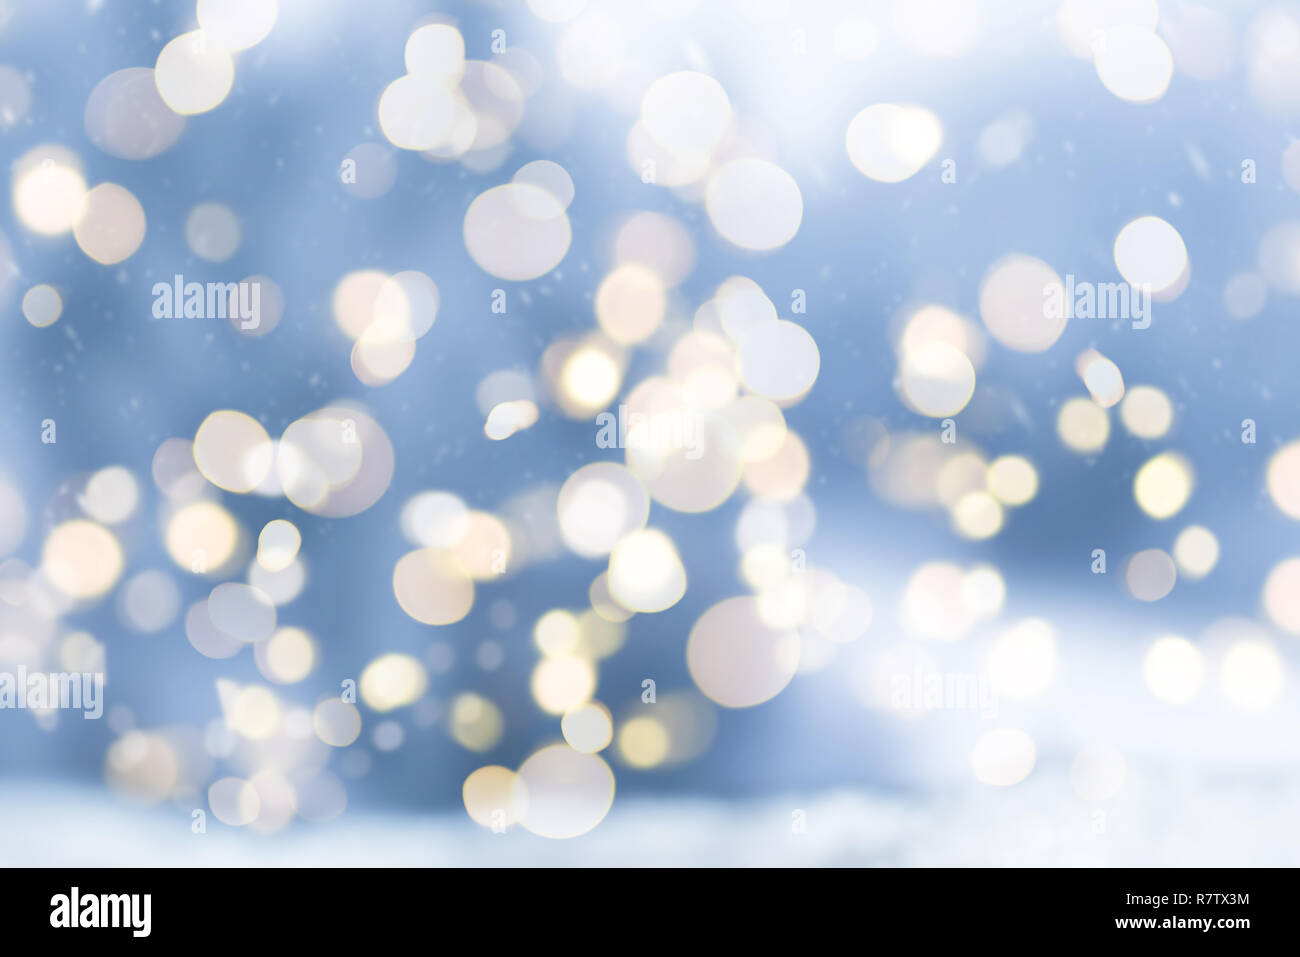 Borroso invierno con nieve de navidad con luces de fondo bokeh circular Foto de stock